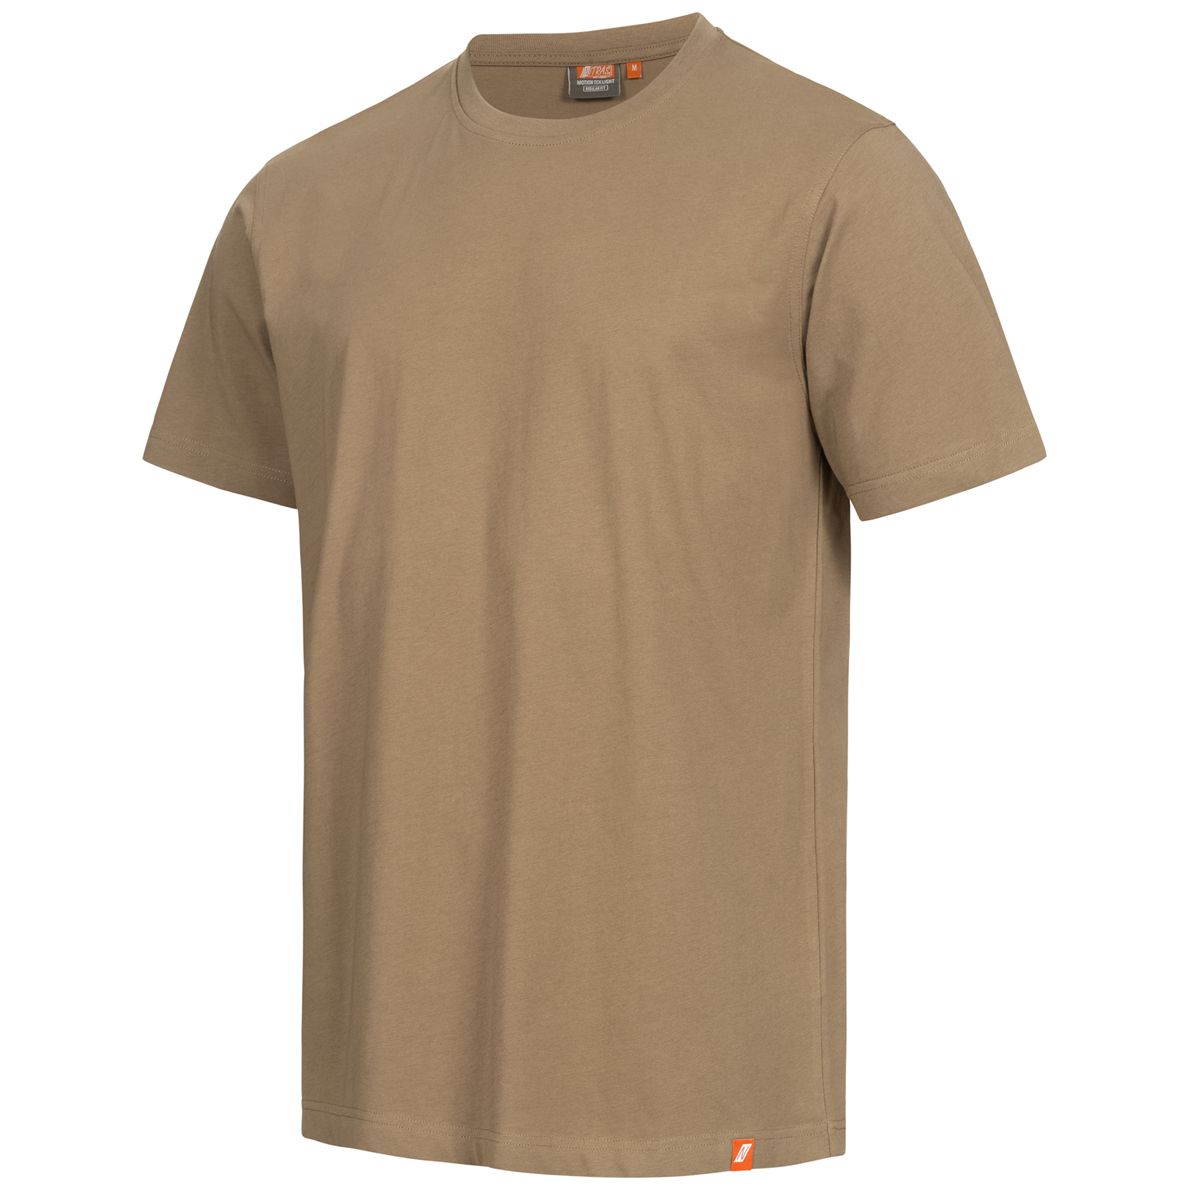 NITRAS MOTION TEX LIGHT work T-shirt - 100% cotton short sleeve shirt - for work - Beige - 5XL